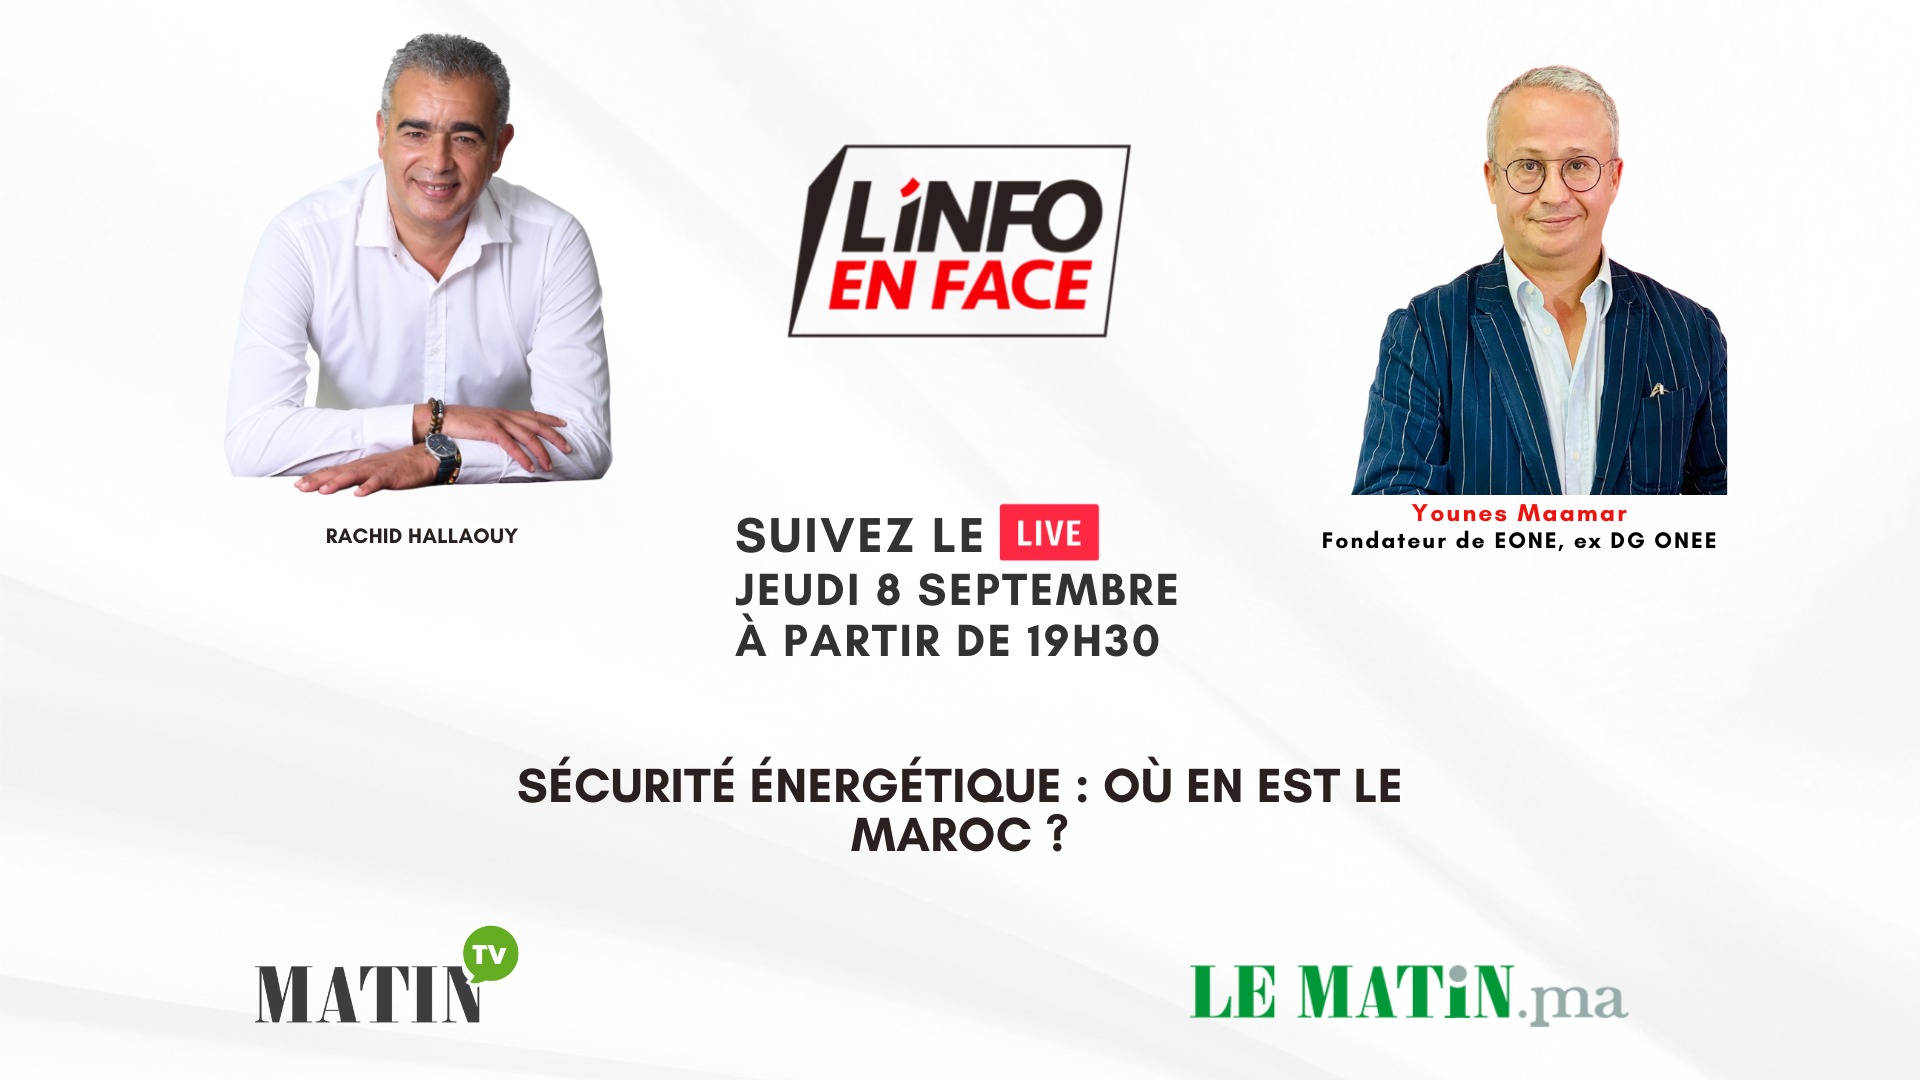 Younes Maamar et la Sécurité énergétique